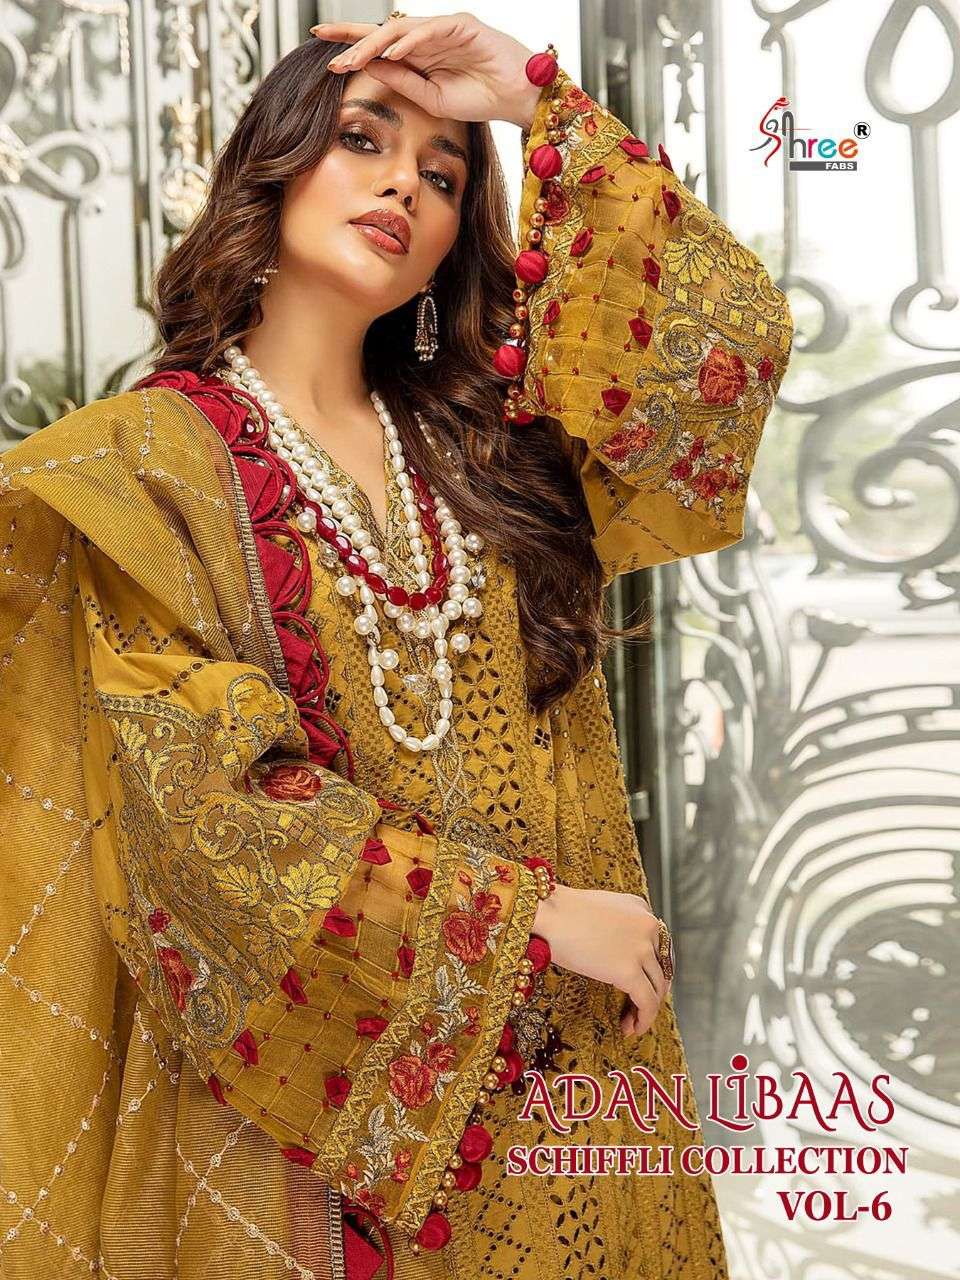 Shree Fabs Adan Libaas Schiffli Vol 6 Lawn Cotton Pakistani Suits